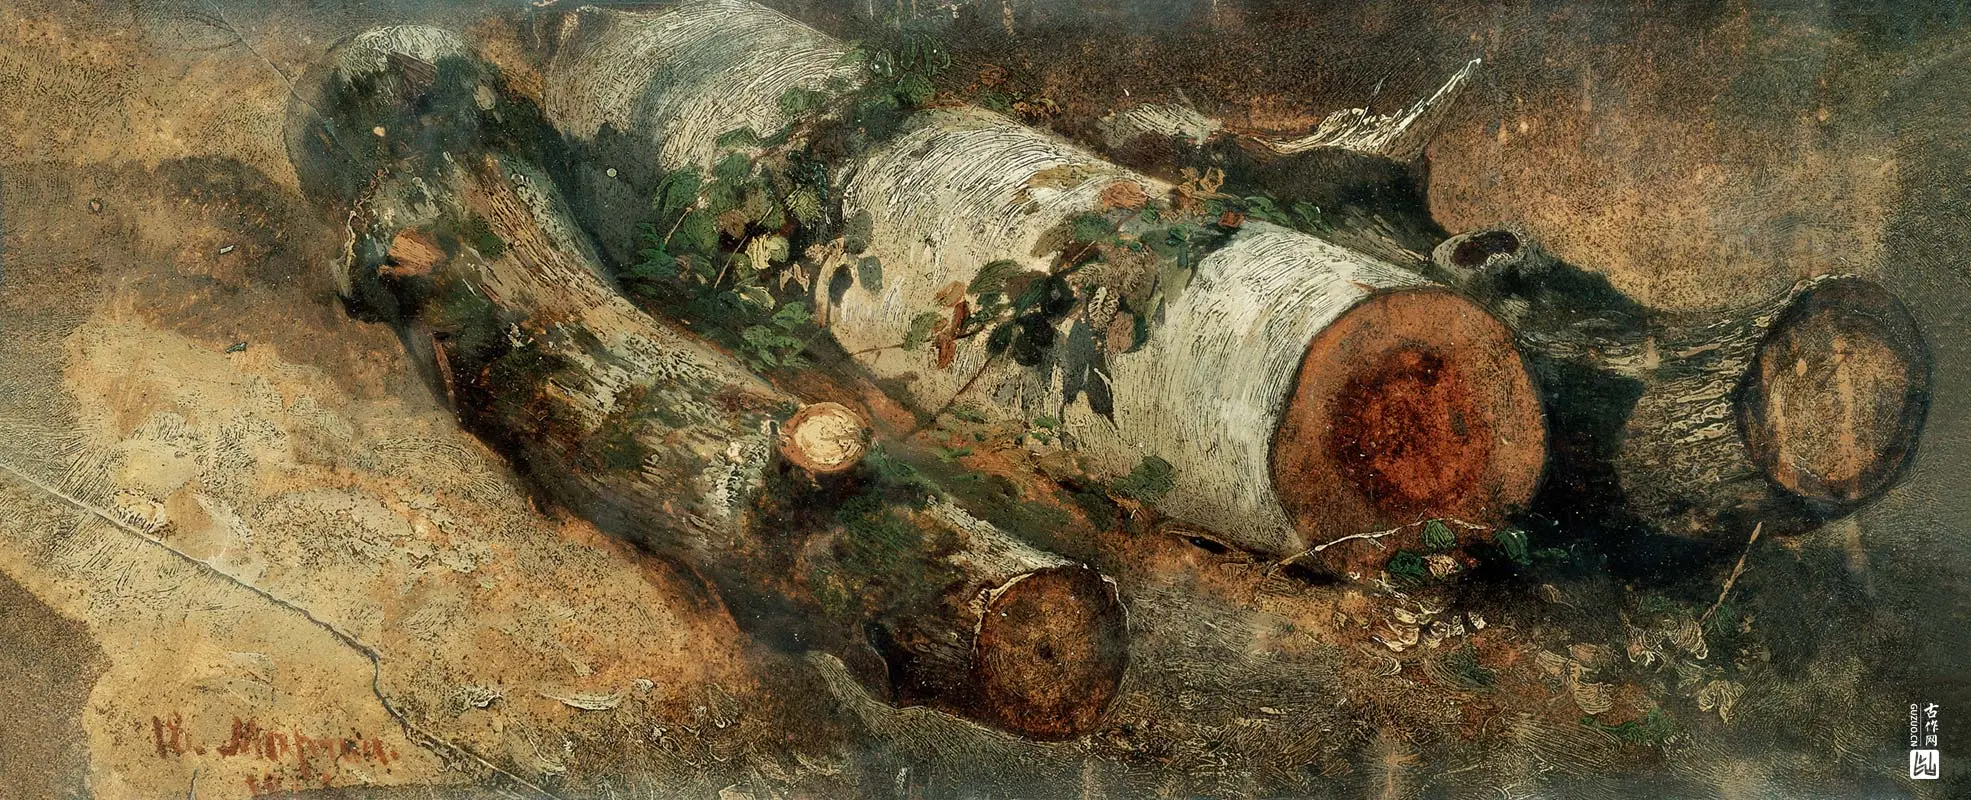 伊万·希施金作品《砍伐的桦树》高清图片